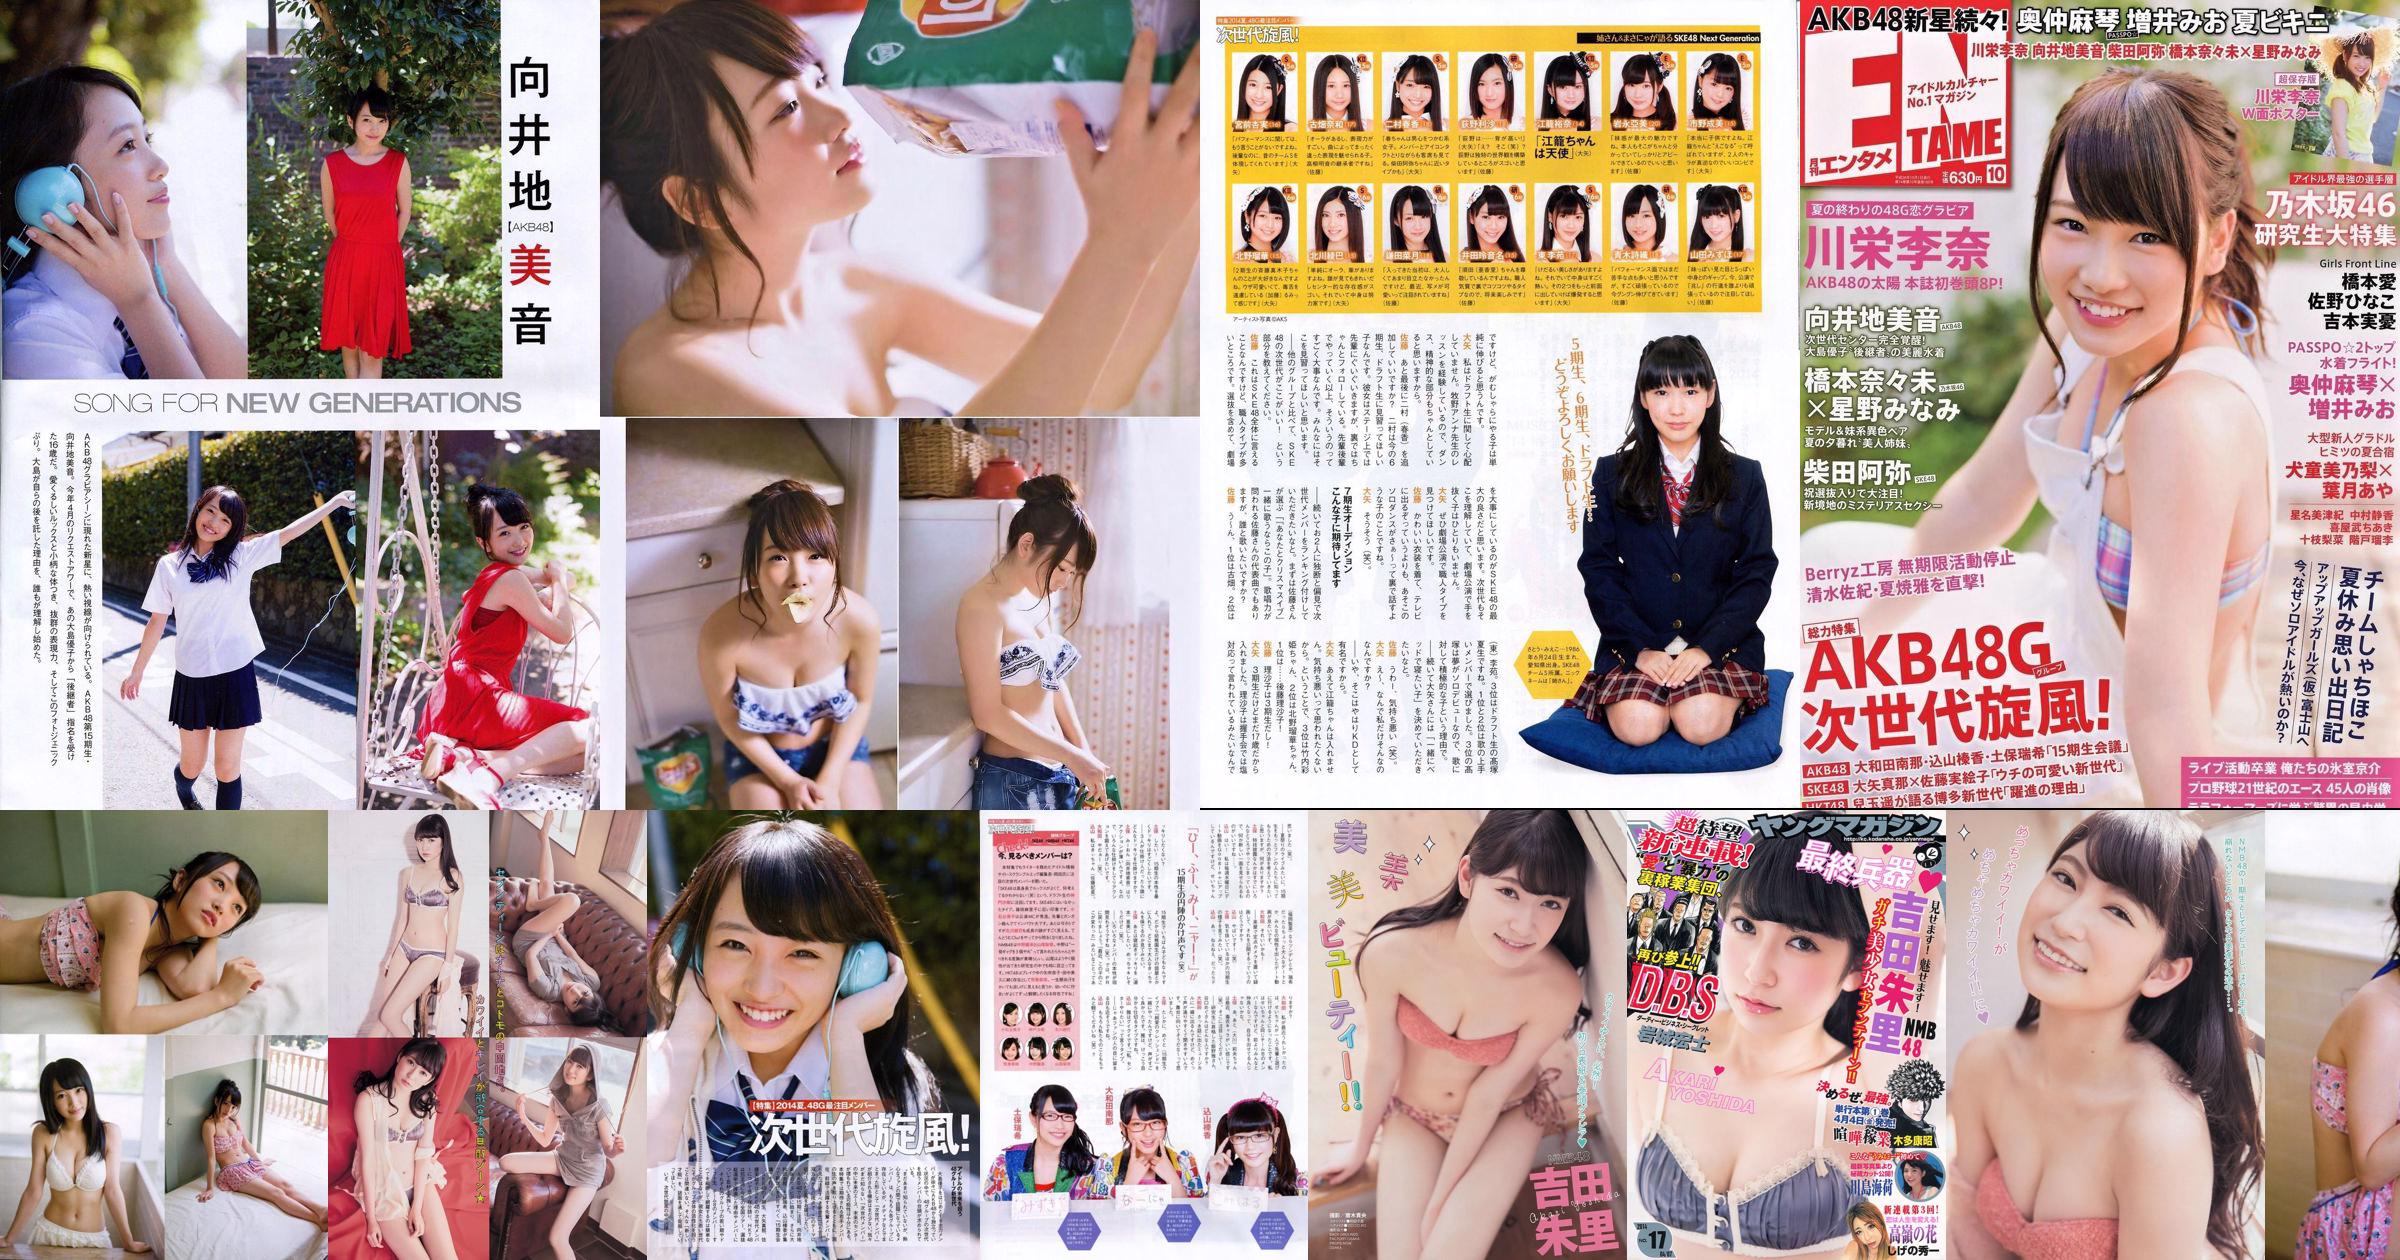 [Majalah Muda] Akari Yoshida Umika Kawashima 2014 No.17 Foto No.08ac03 Halaman 5